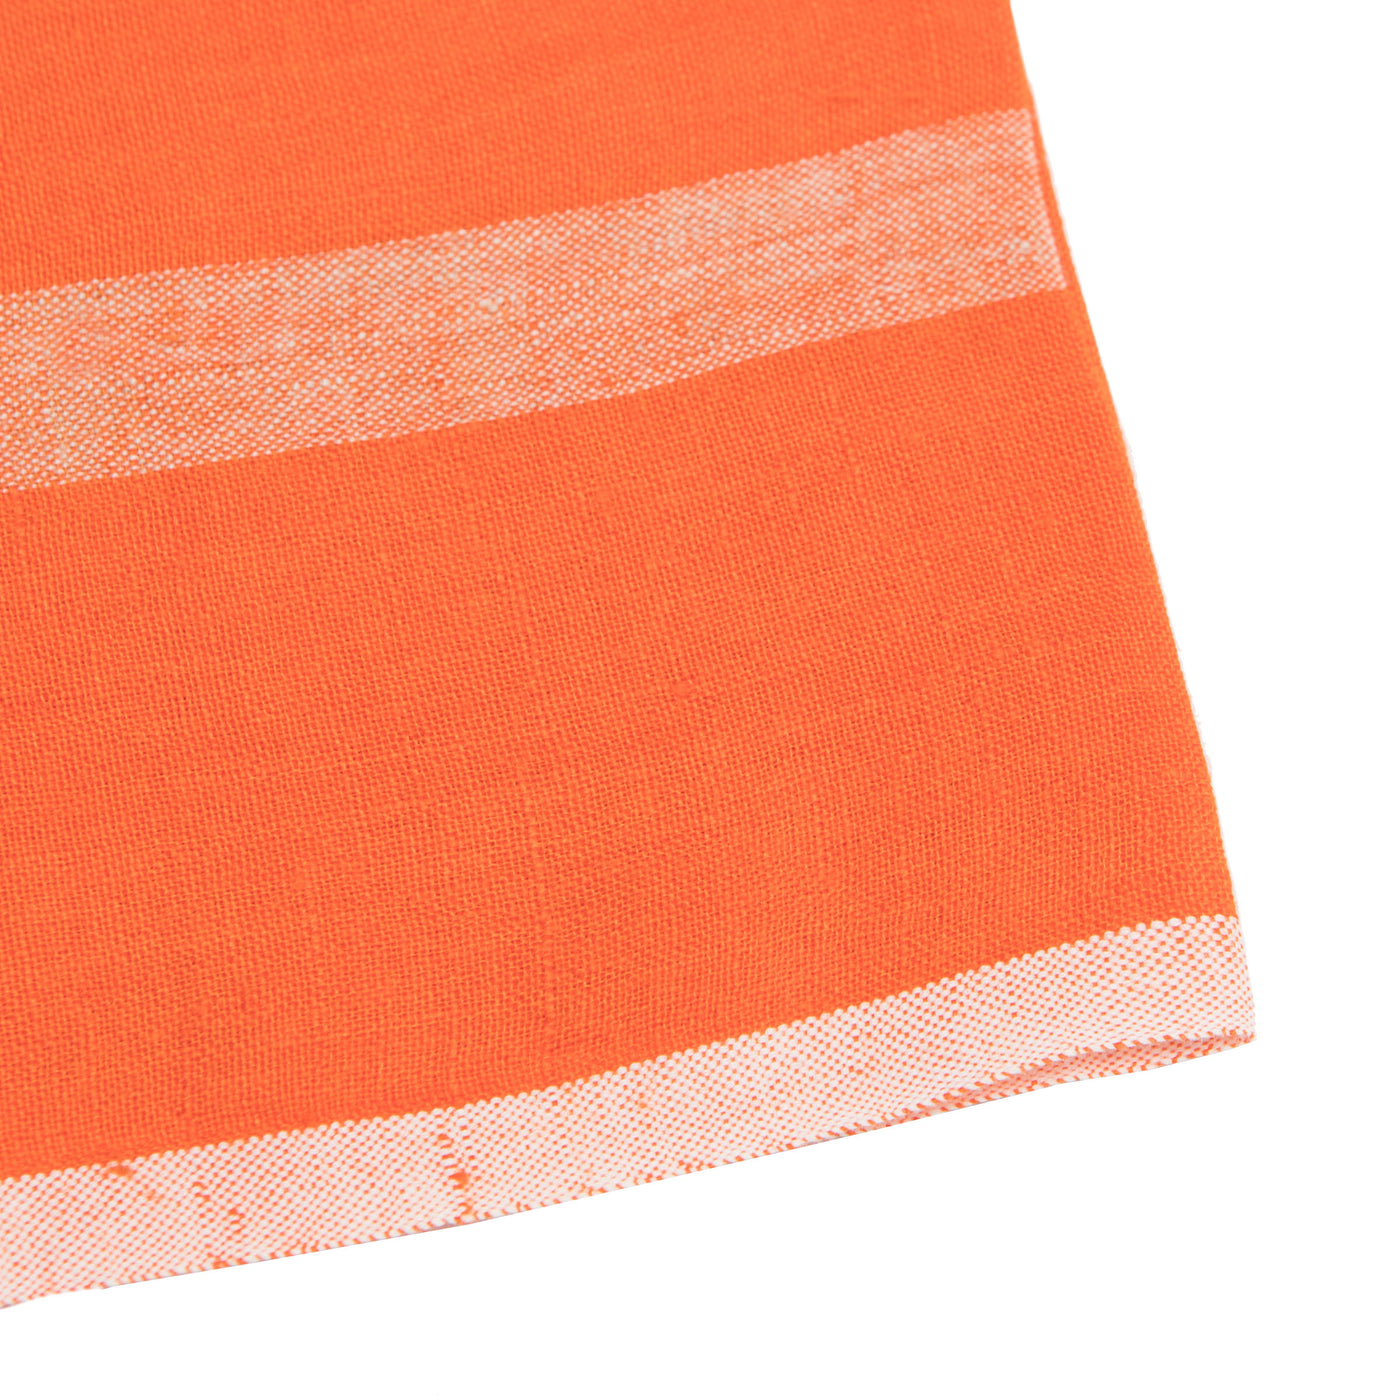 Laundered Linen Napkins Orange & Natural, Set of 4